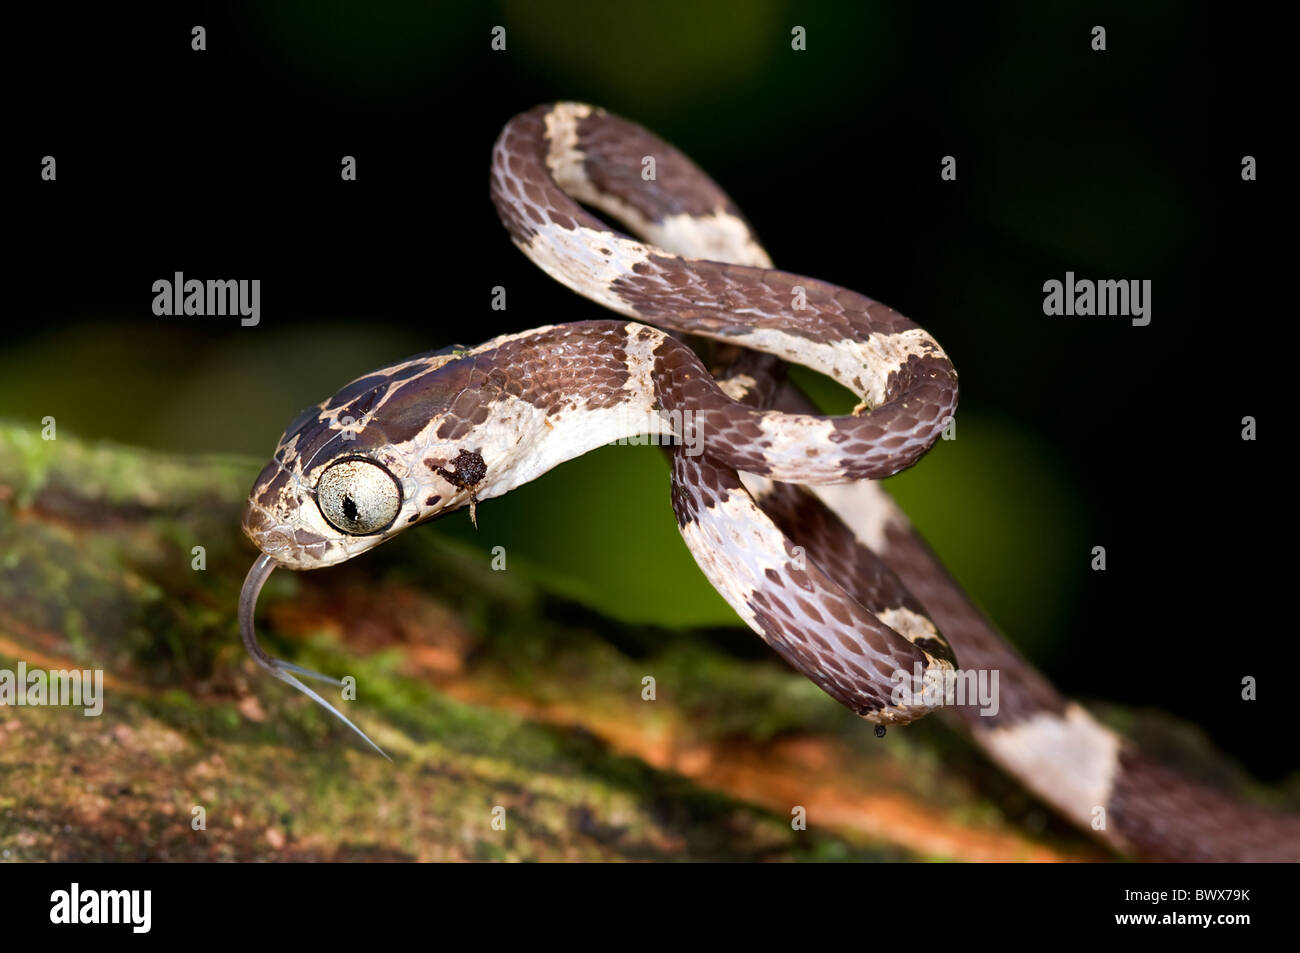 Small Imantodes cenchoa snake from ecuador Stock Photo